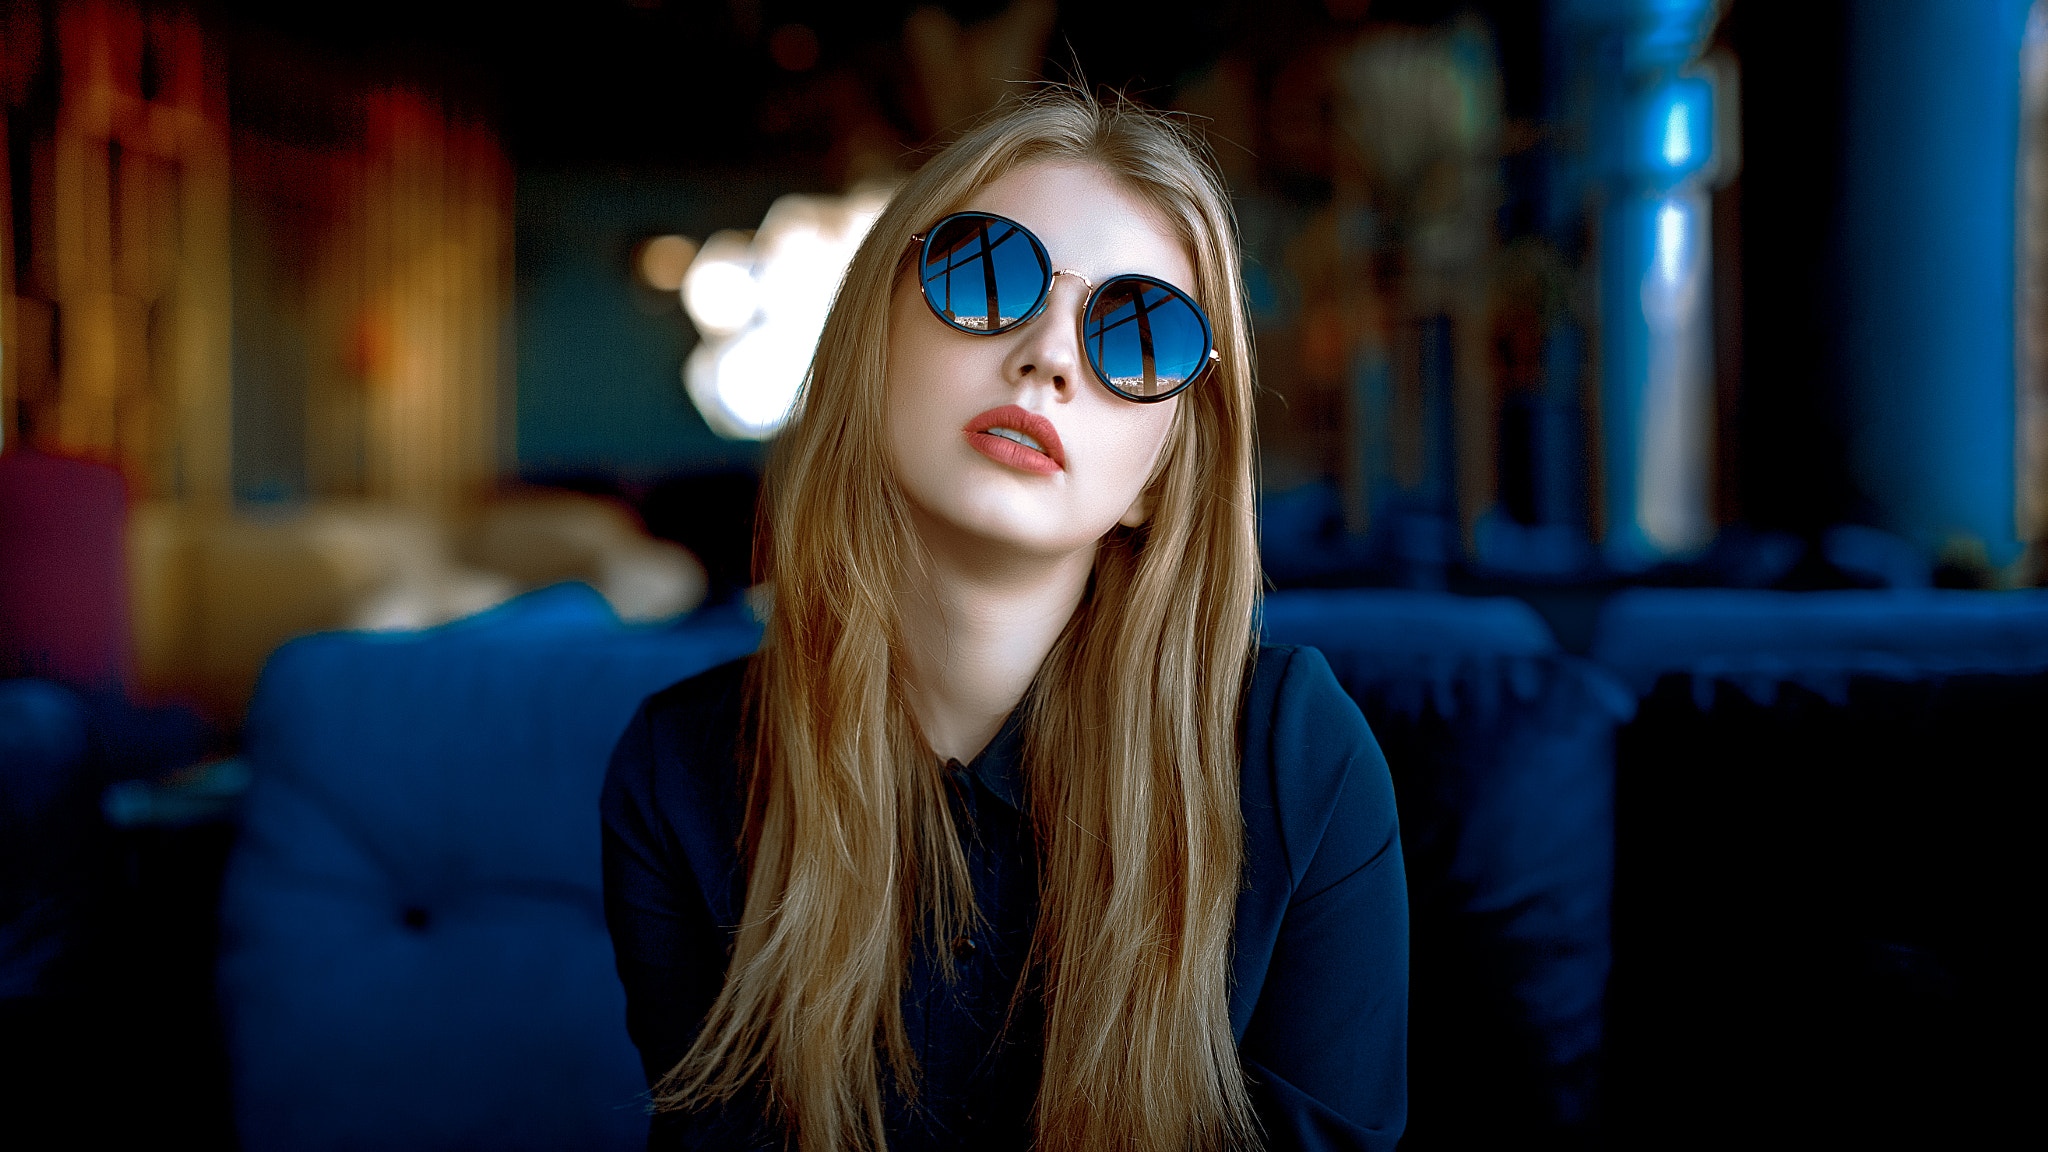 People 2048x1152 women model blonde portrait sunglasses women with shades indoors shirt bokeh depth of field women indoors Andrey Metelkov lipstick